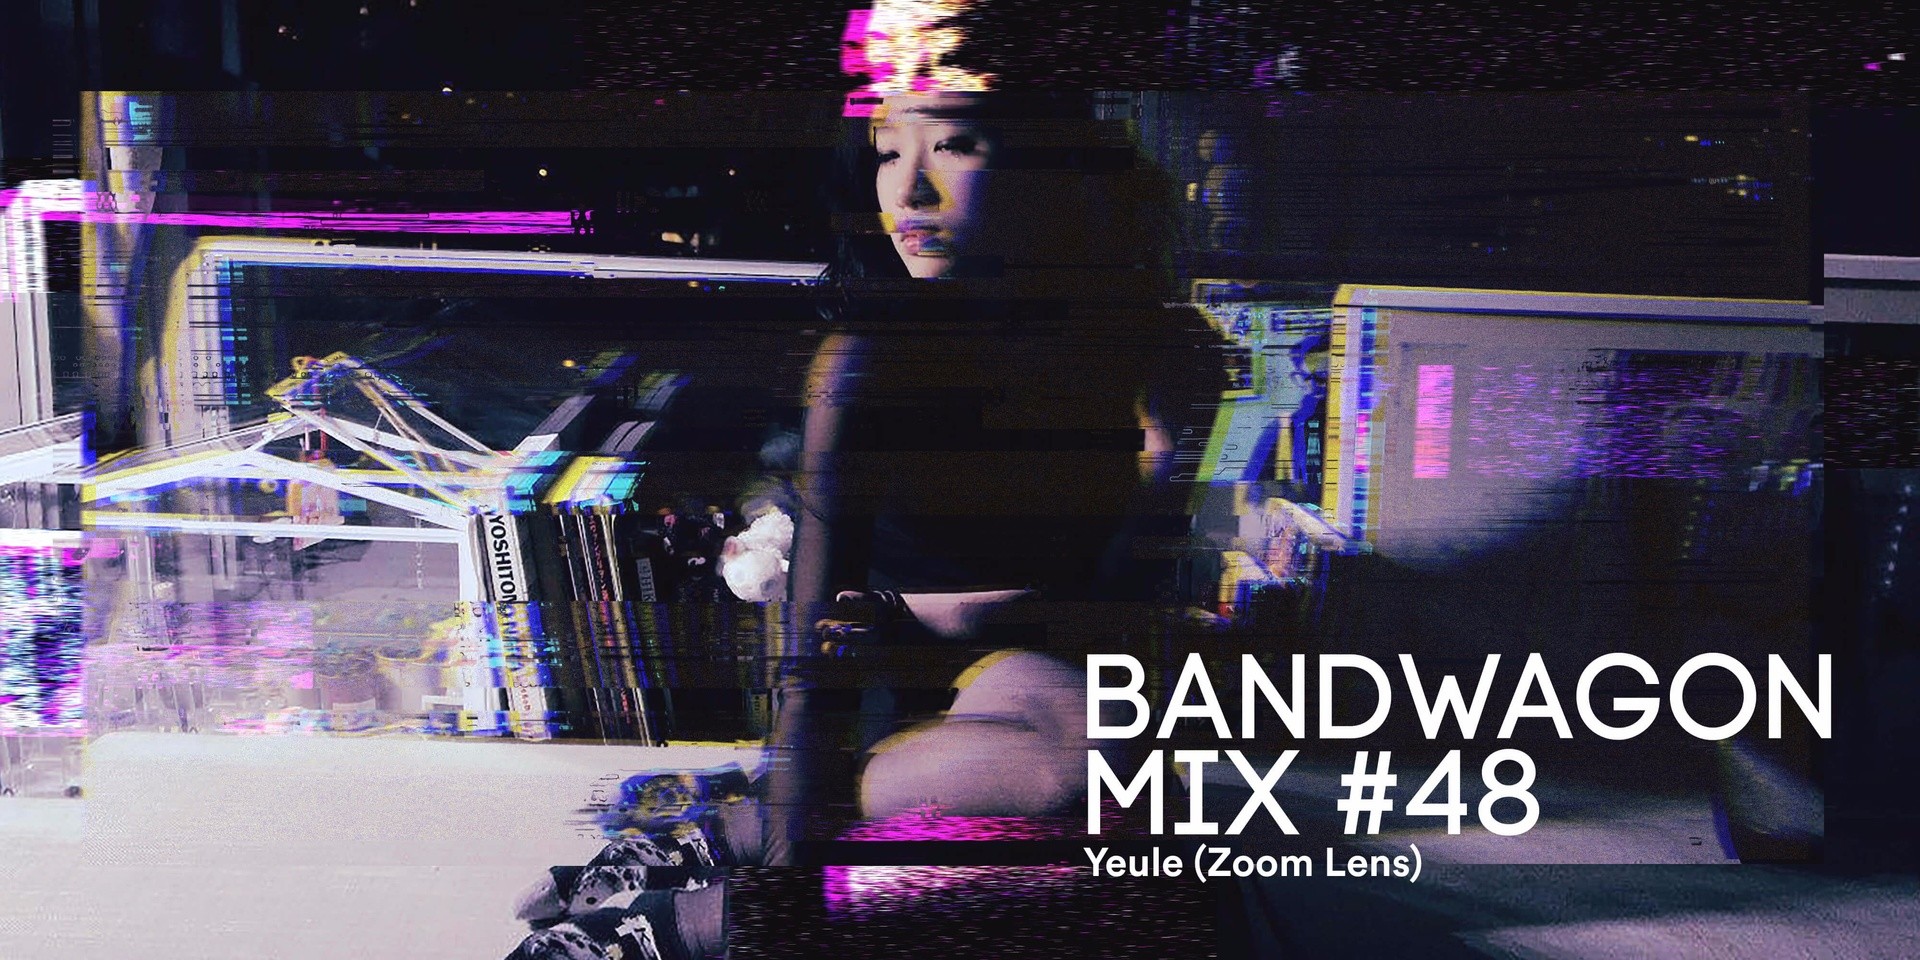 Bandwagon Mix #48: Yeule (Zoom Lens)